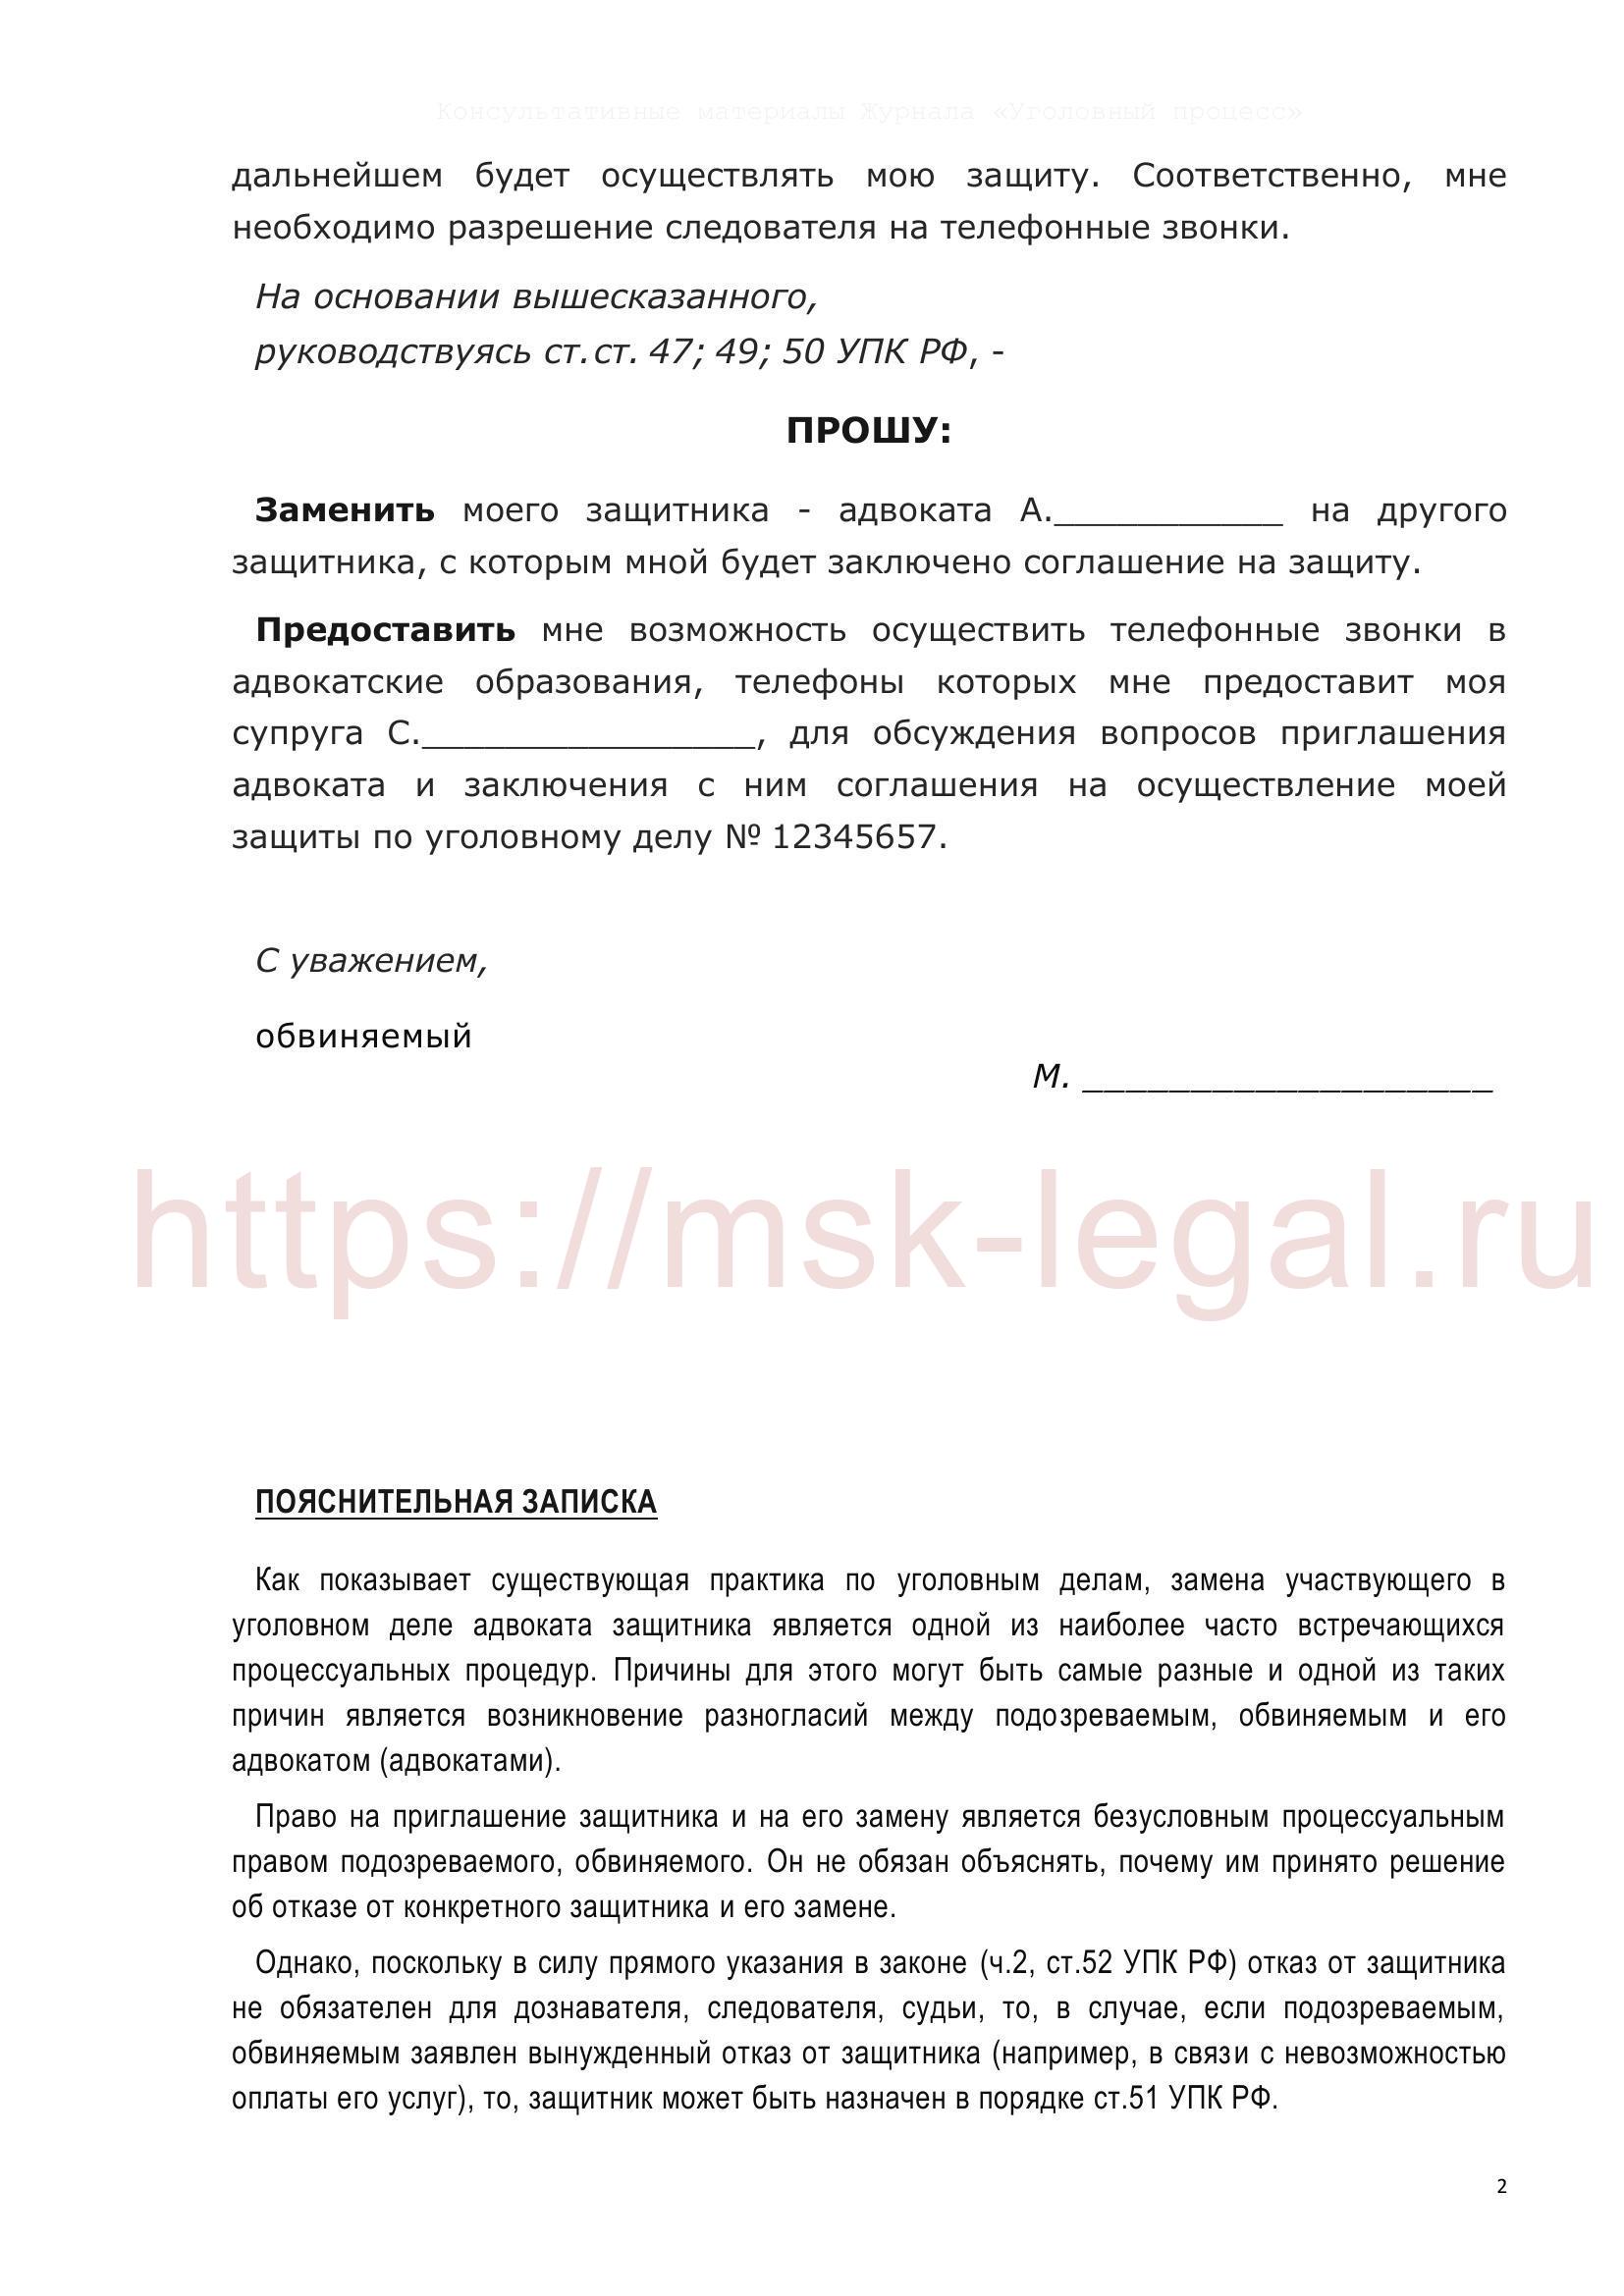 Ходатайство о замене адвоката в соответствии со ст. 50, 52 УПК РФ